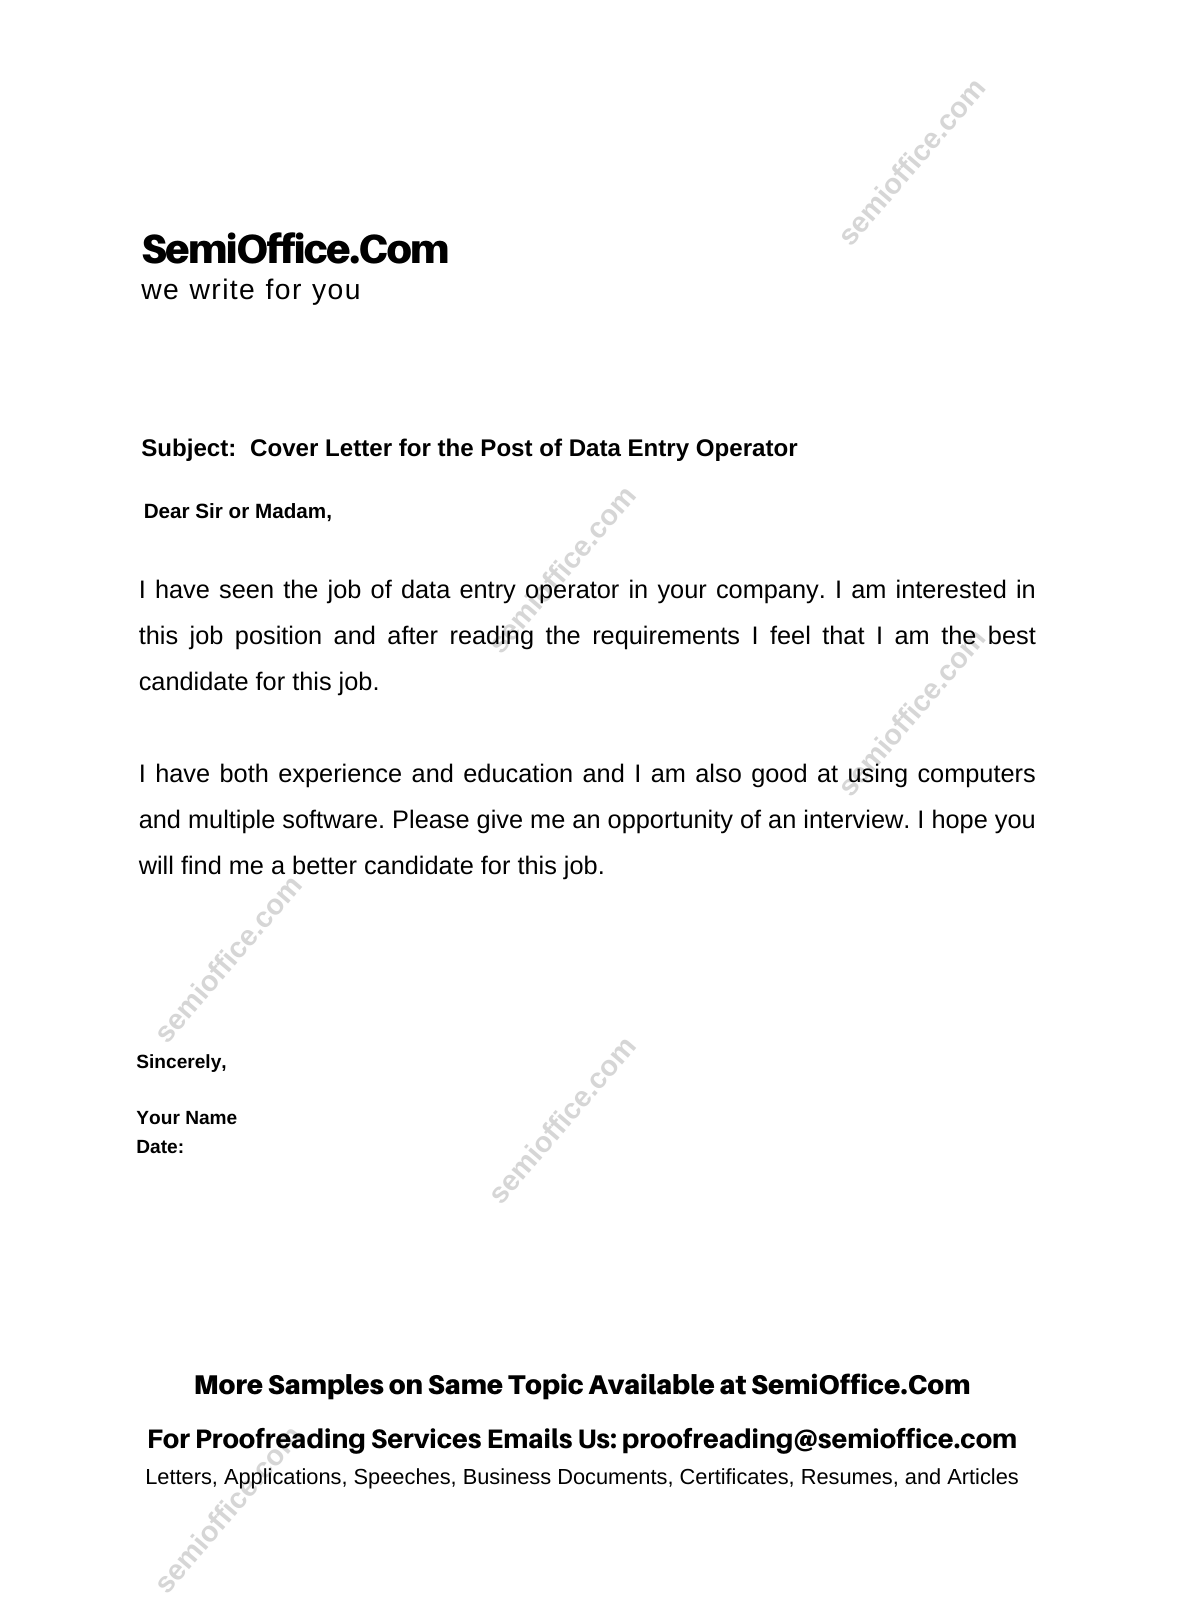 cover letter for data entry operator job